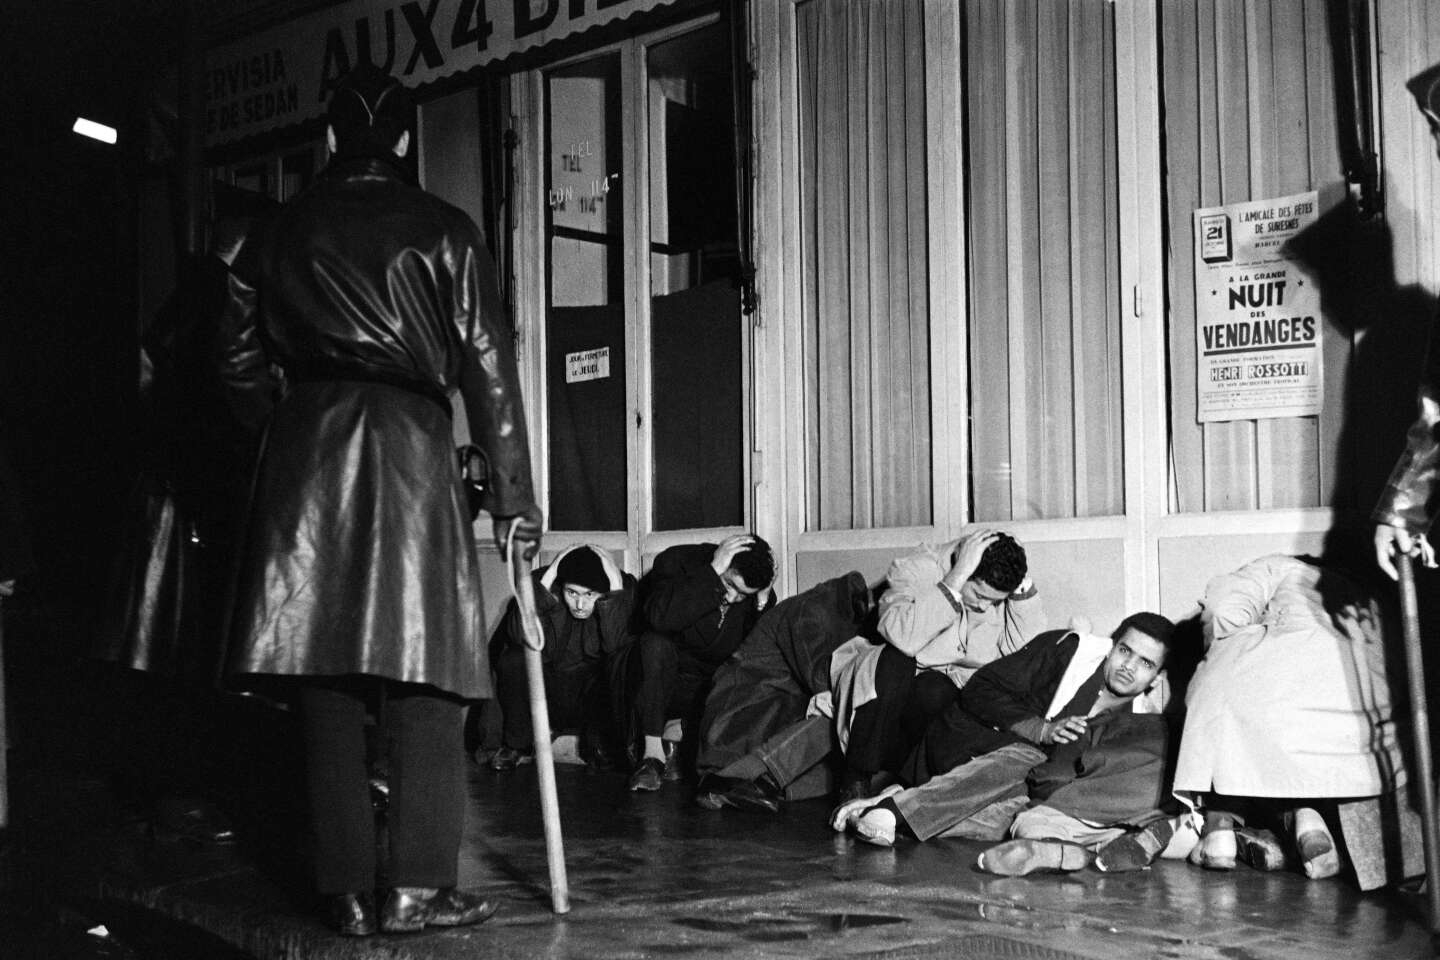 Massacre du 17 octobre 1961 : le Rassemblement national campe sur une position révisionniste